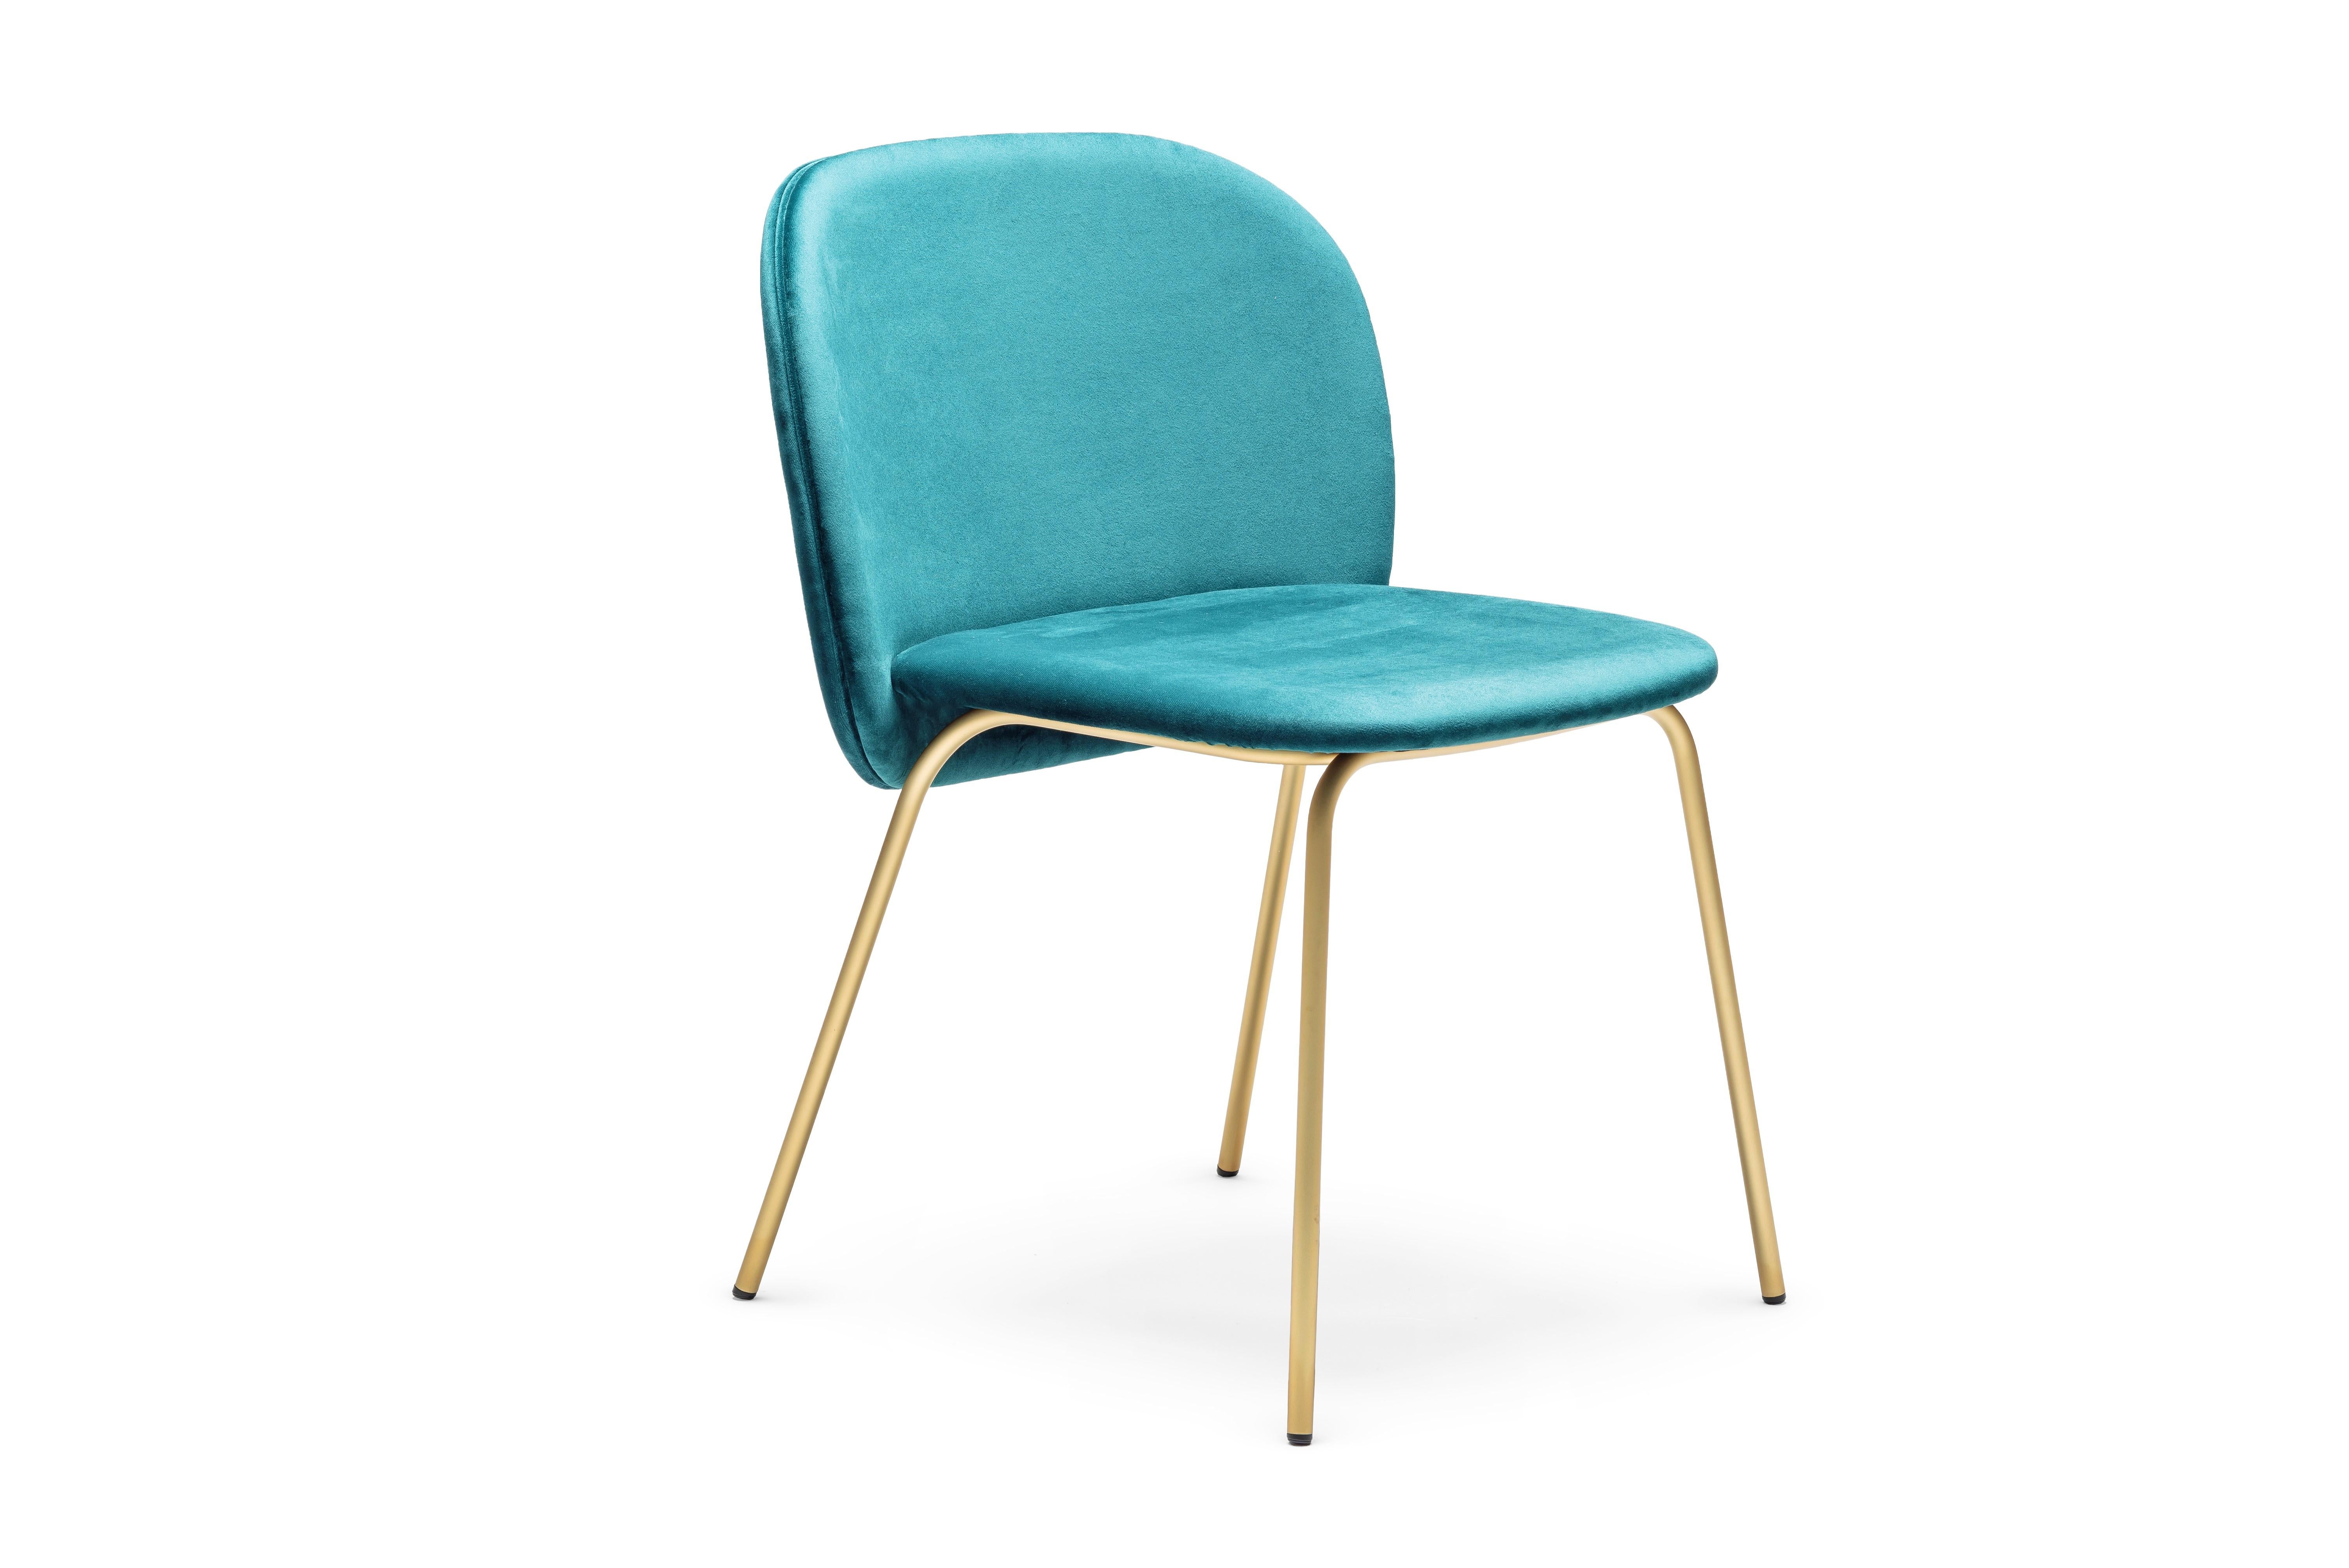 Elegantes und stilvolles Esszimmer-Set mit 8 Stühlen, das sich durch großzügige Kurven und hohe Funktionalität auszeichnet. Gepolstert mit arktisch blauem Ultra-Wildleder und satiniertem Messingfuß.
Handgefertigt in Italien
Abmessungen:
Breite 58 cm